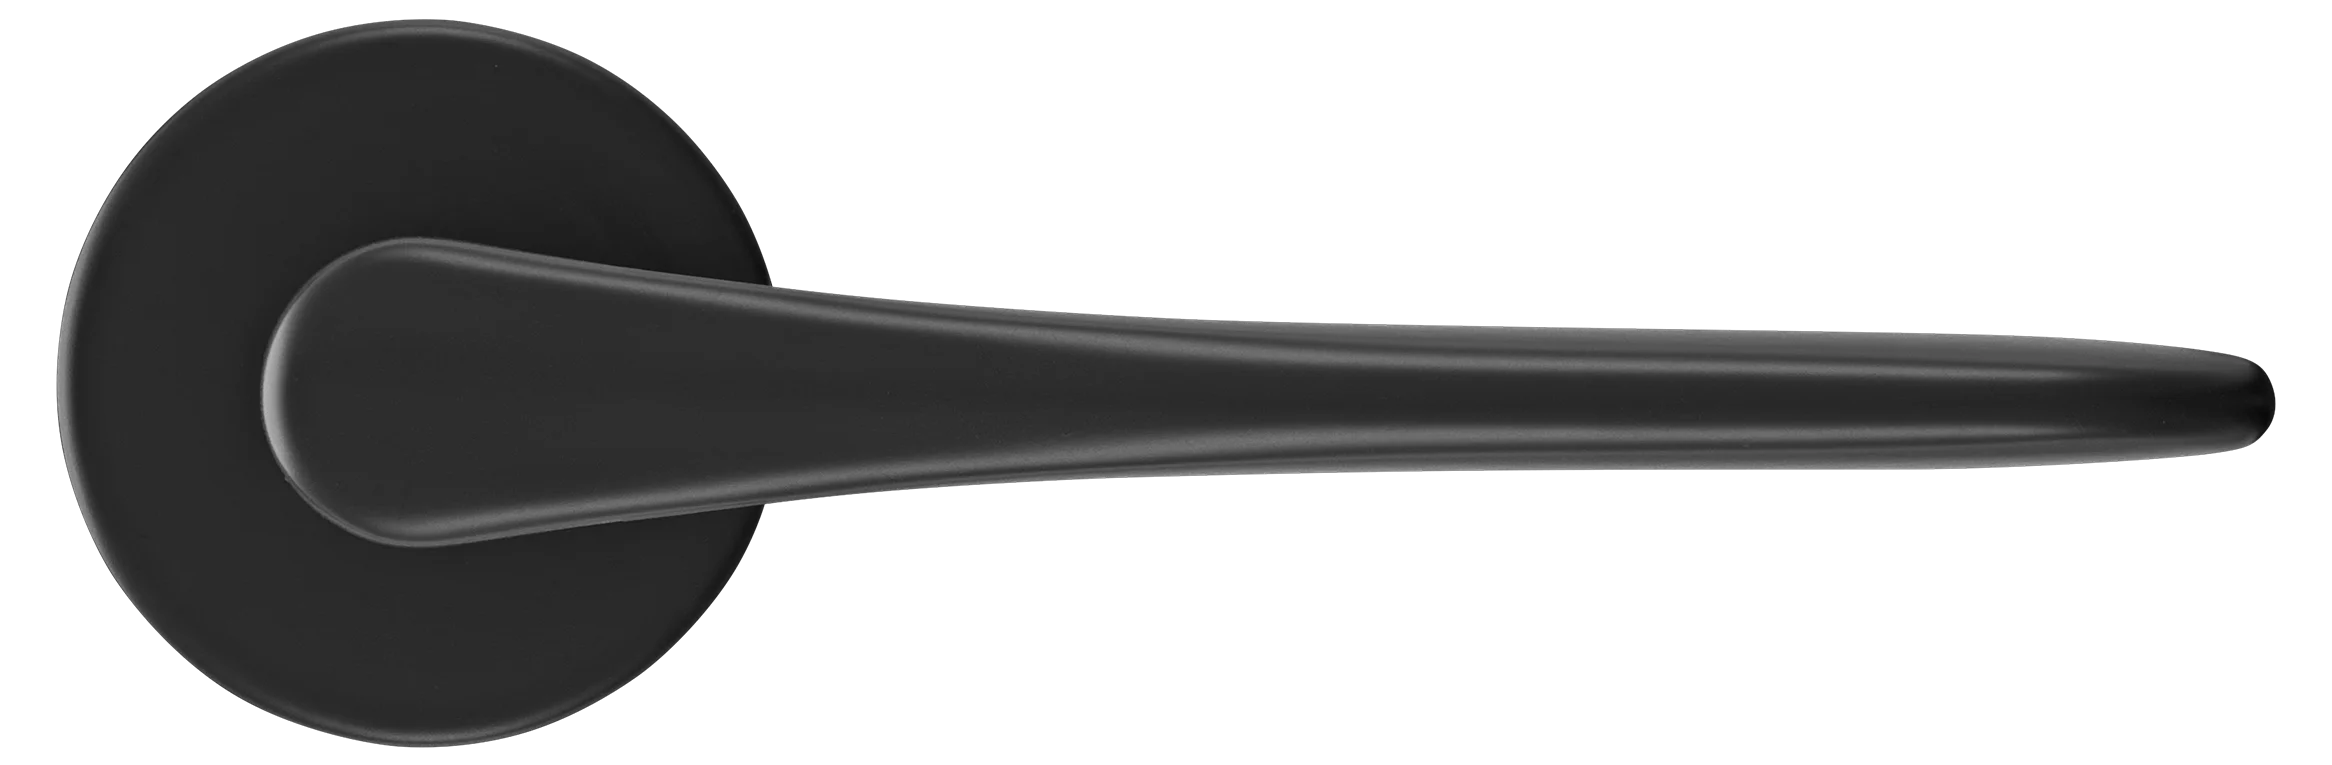 AULA R5 NERO, ручка дверная на розетке 7мм, цвет -  черный фото купить в Липецке